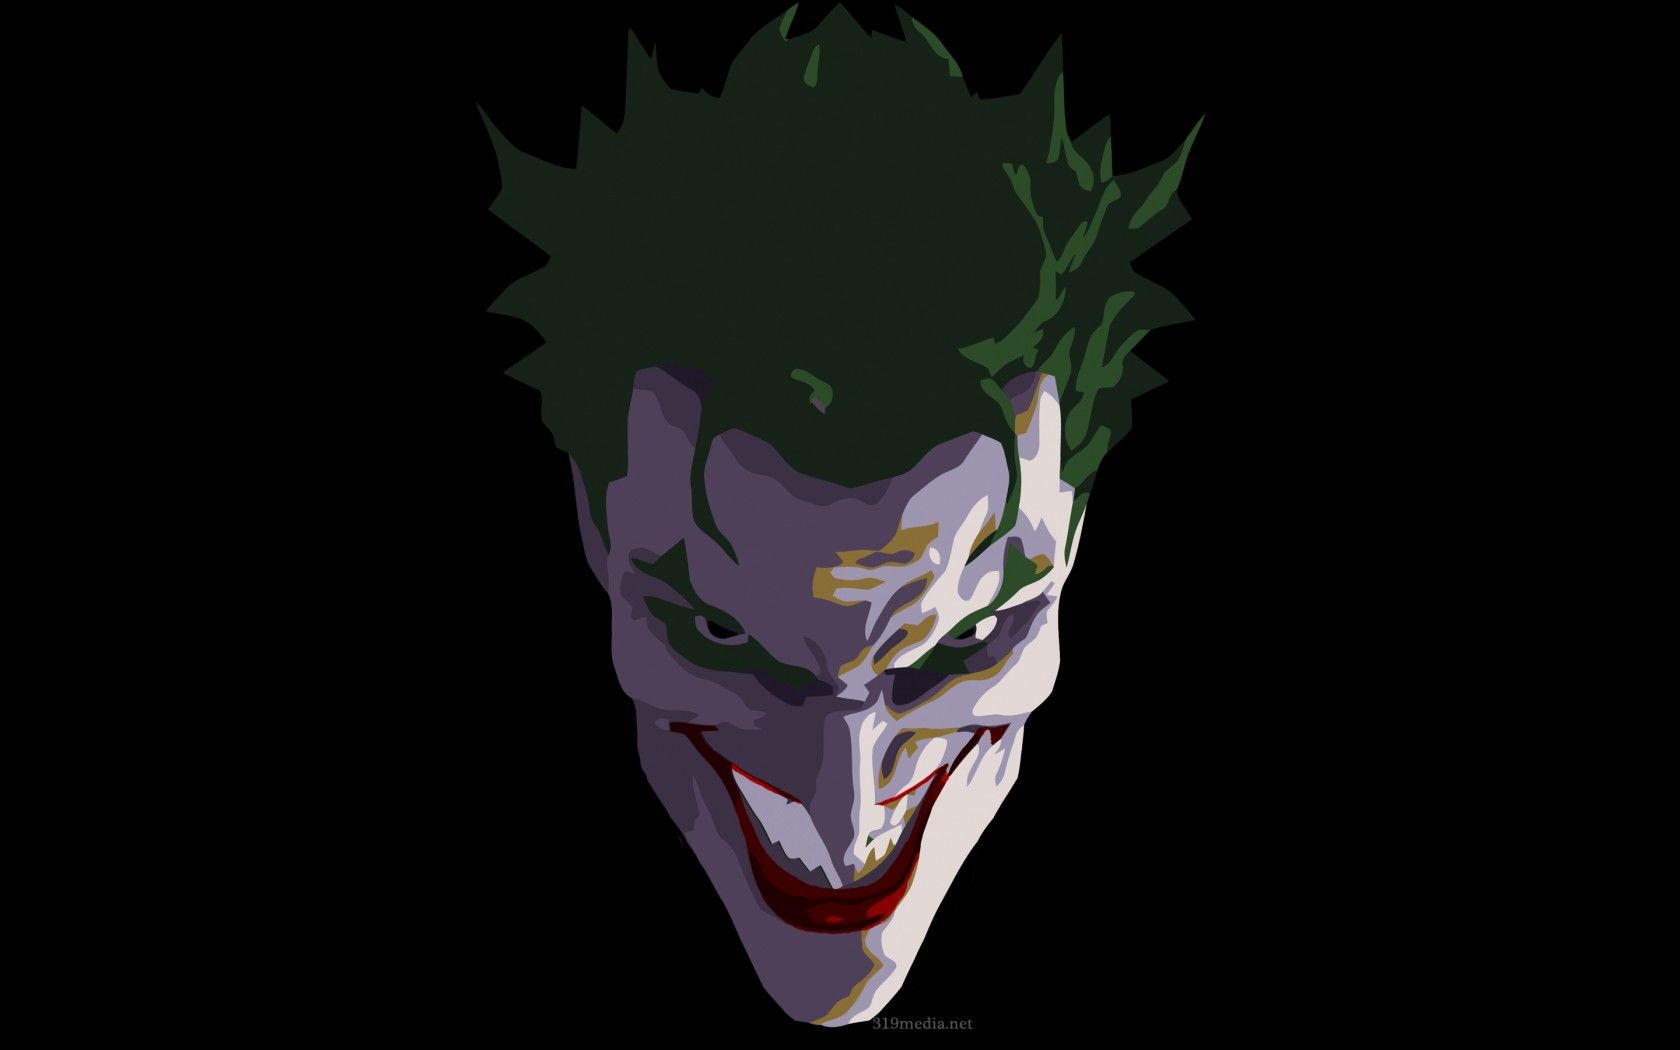 Joker Face Dark Wallpaperx1050